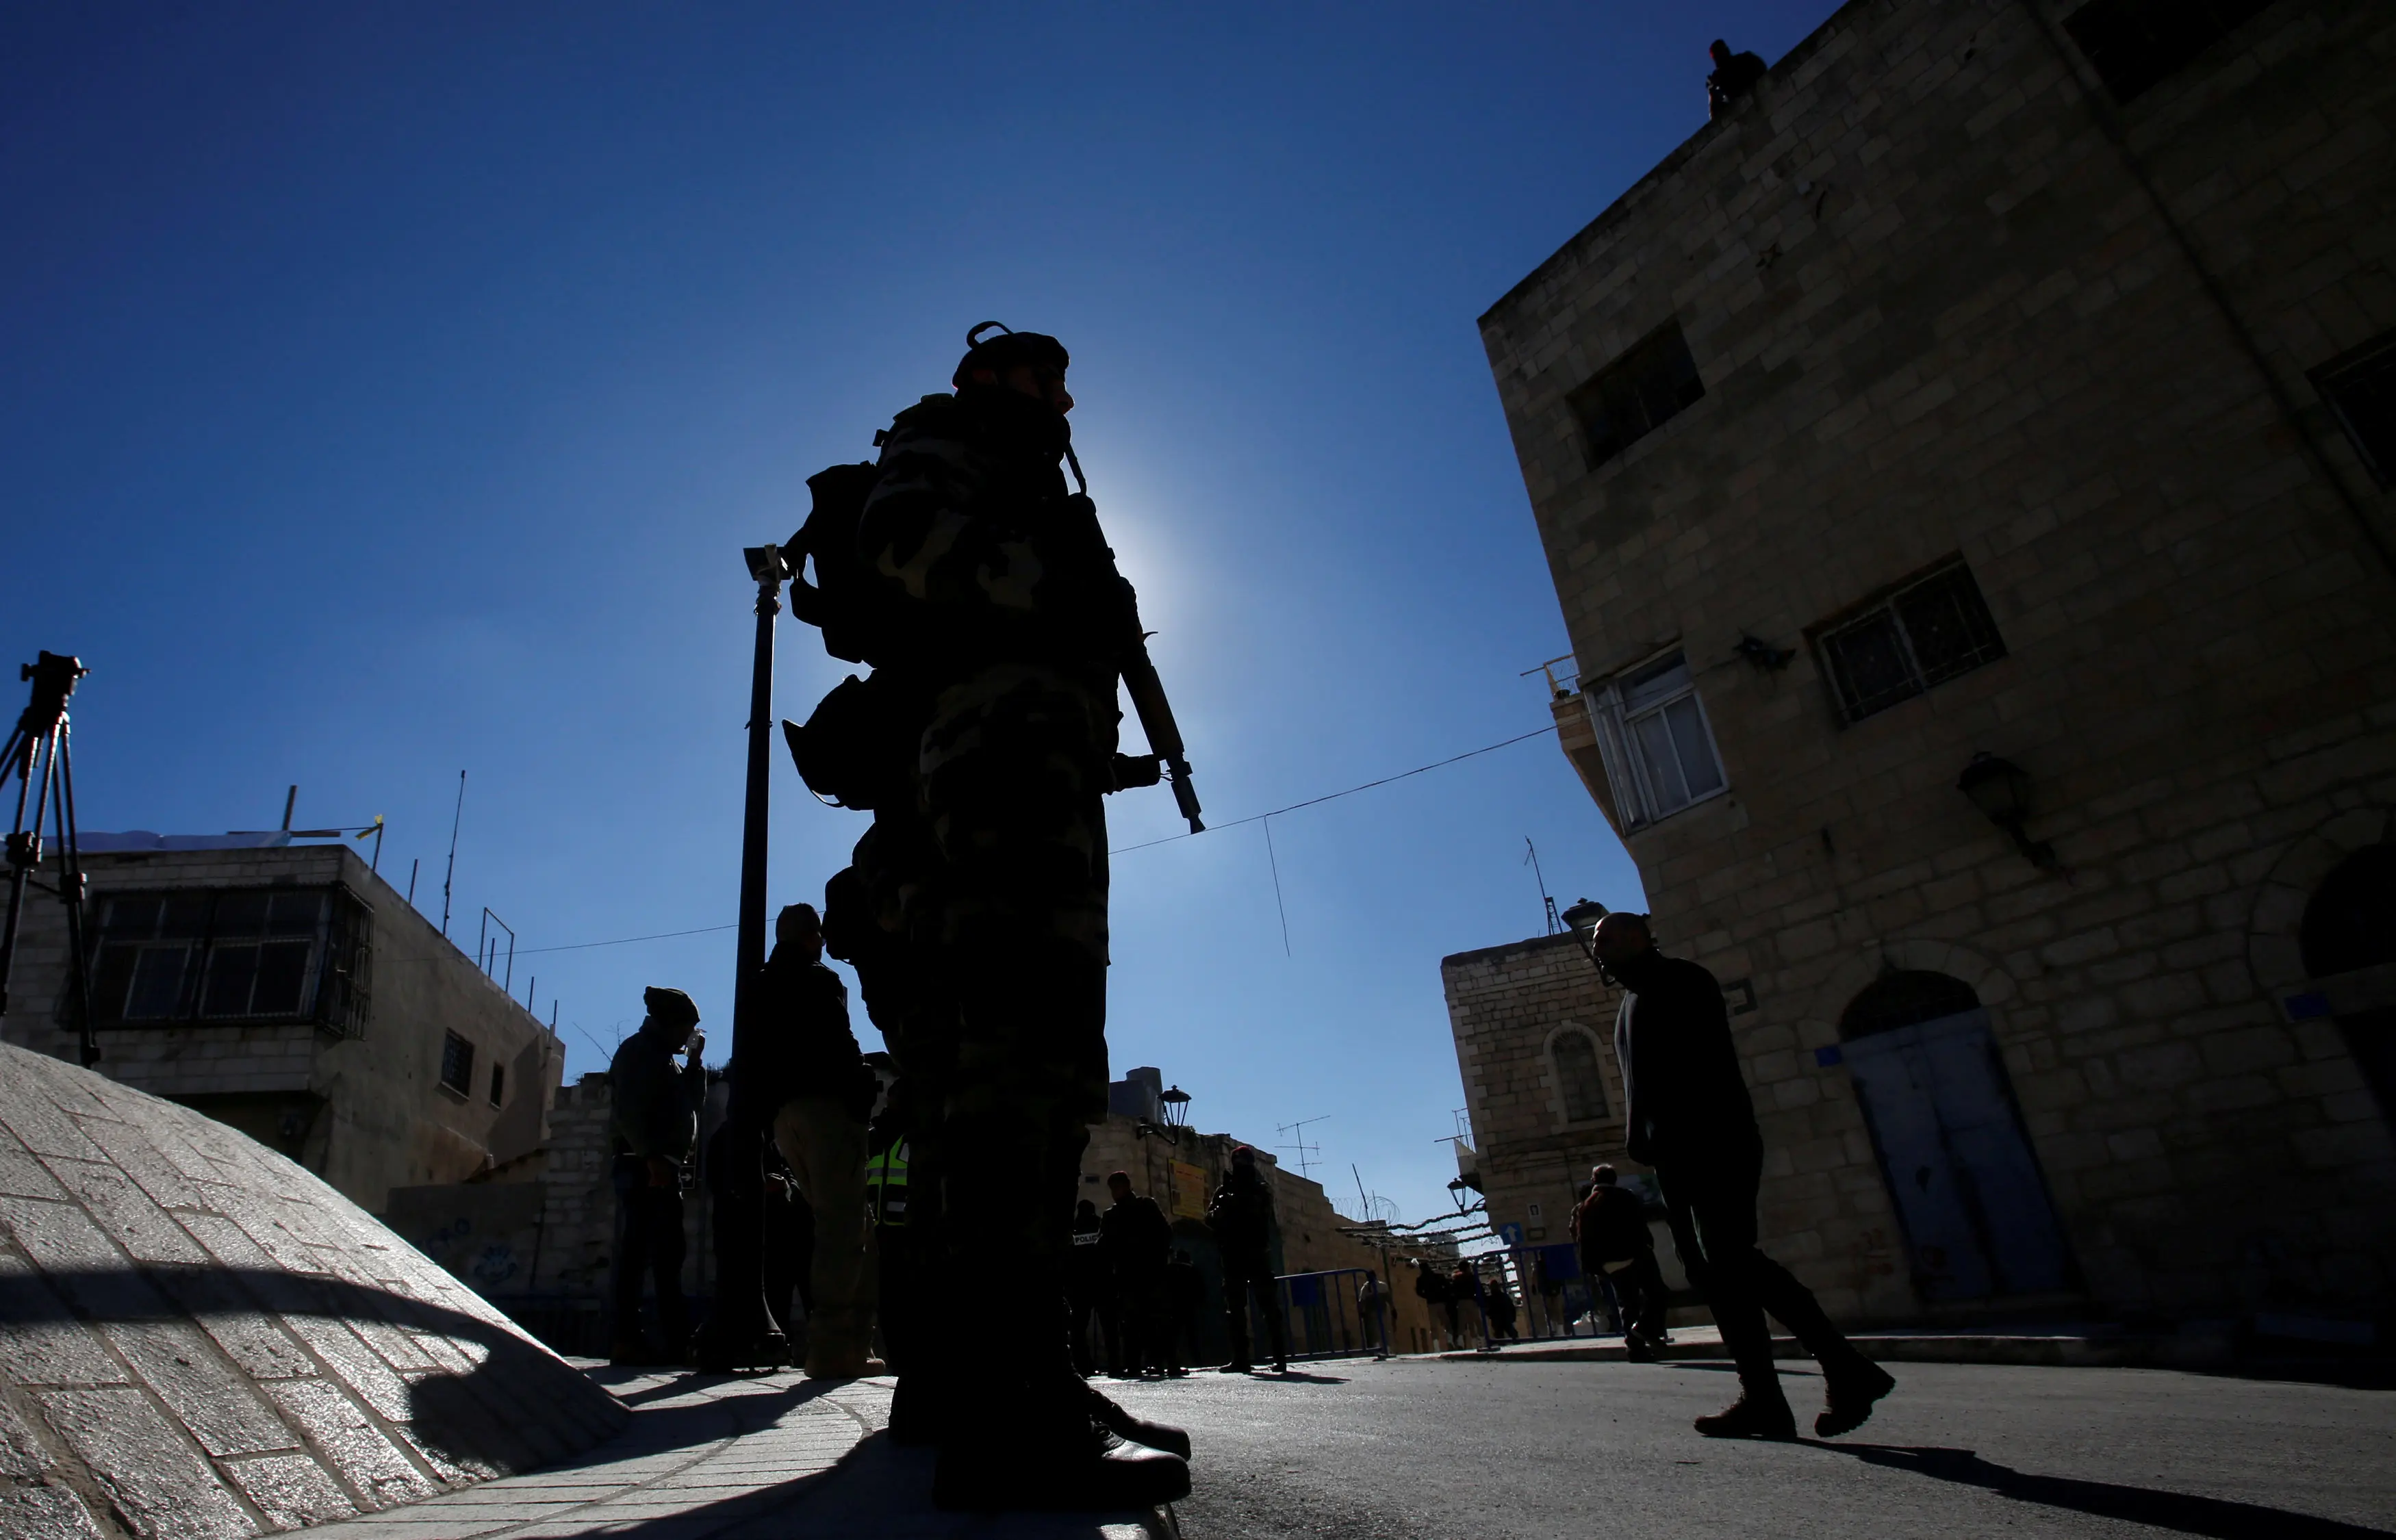 כוחות הביטחון הפלסטיניים לפני הגעת הפטריארך האורתודכסי לבית לחם ב-6 בינואר 2019